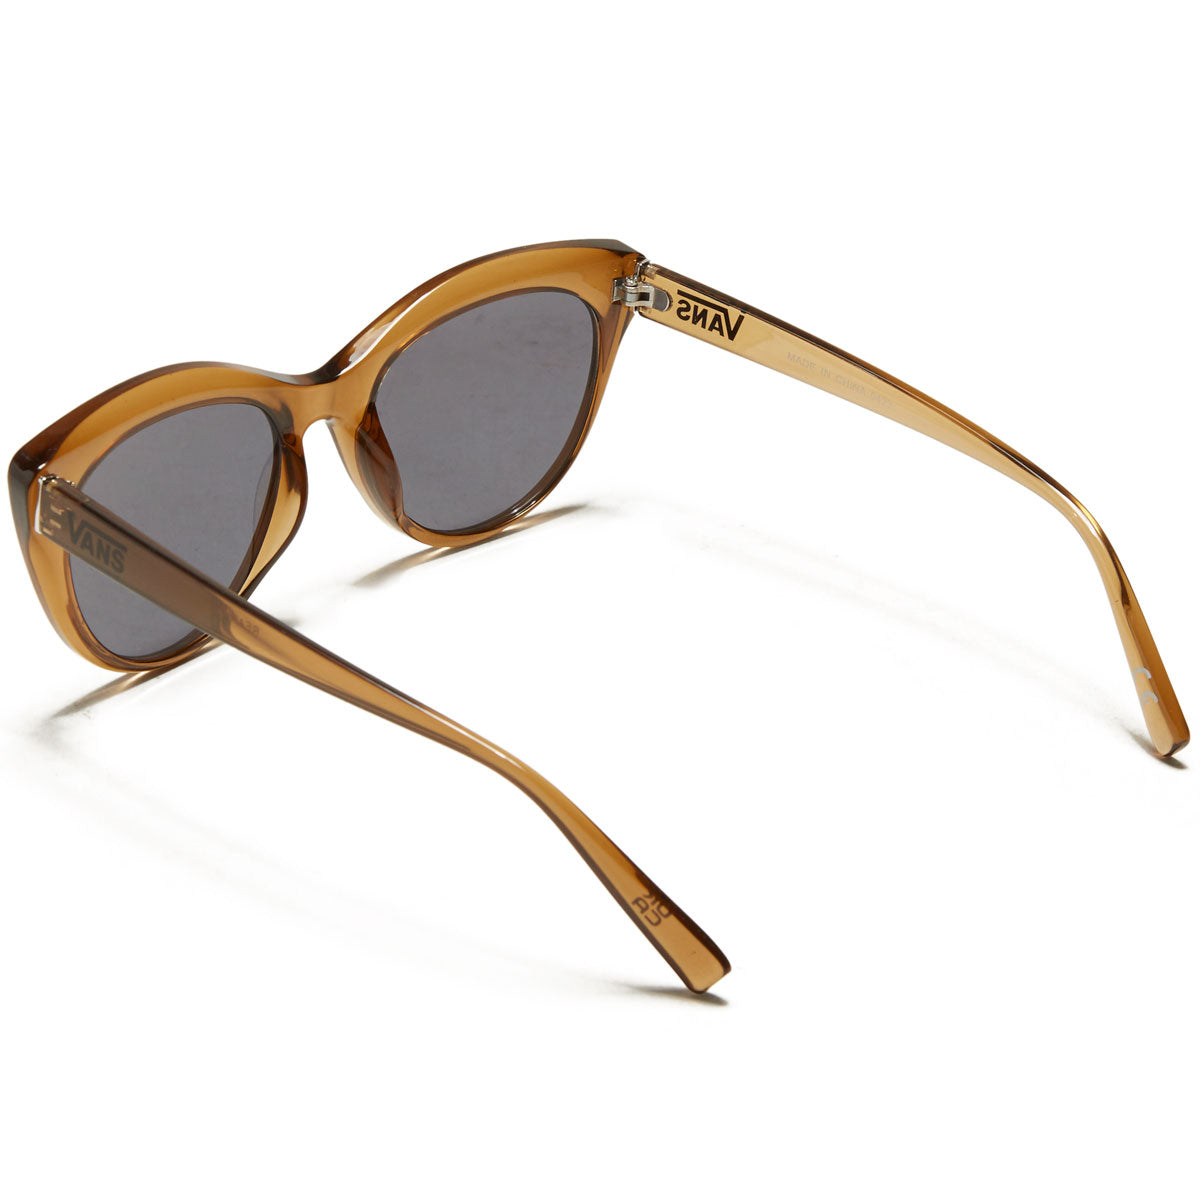 Vans Womens Rear Viewomens Sunglasses - Fatal Floral Golden Brown – CCS